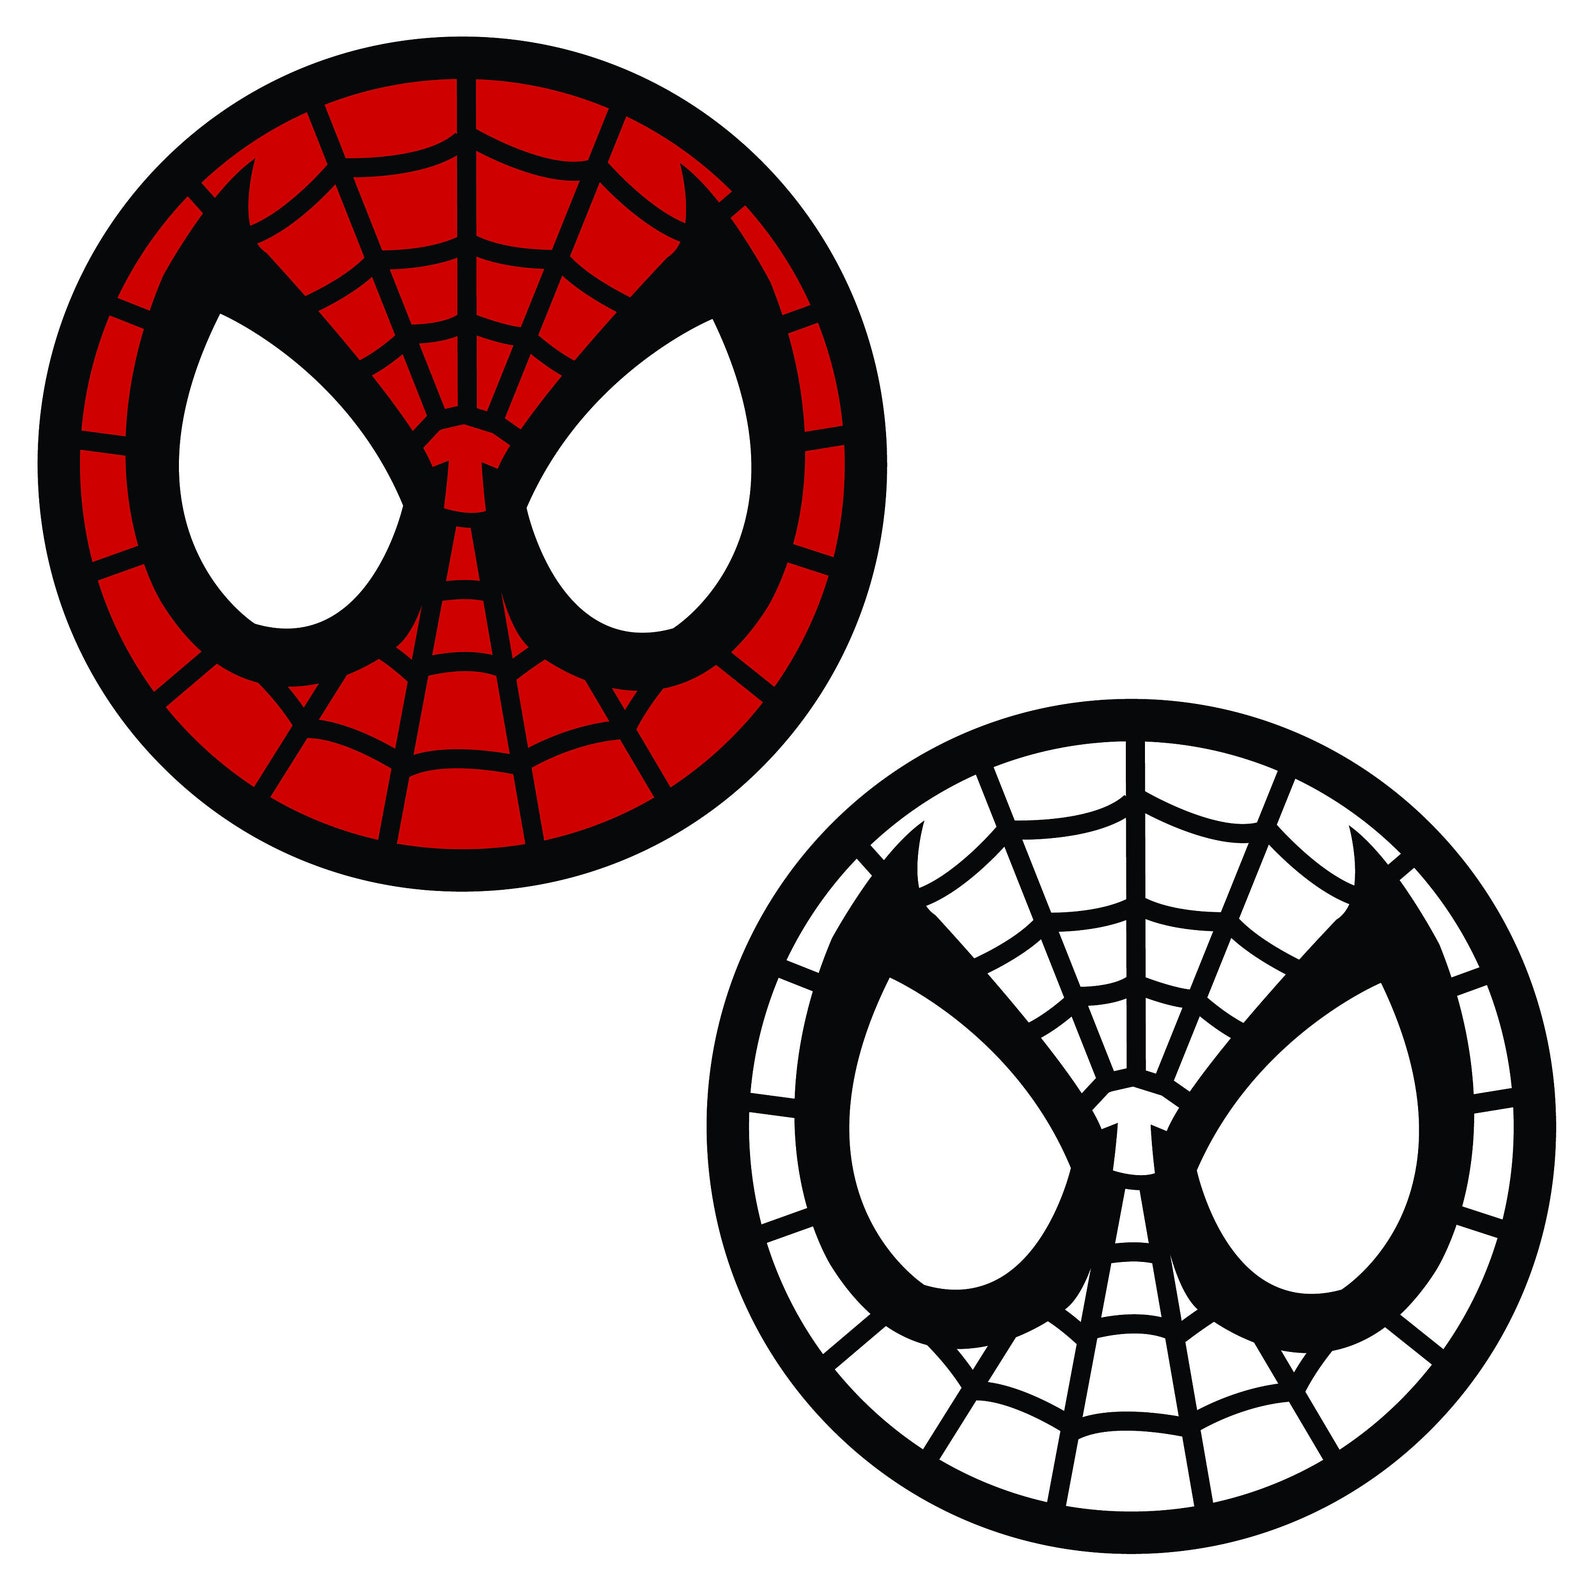 Logotipo de Spider-Man / Marvel Clipart / SVG/EPS/PNG File / | Etsy